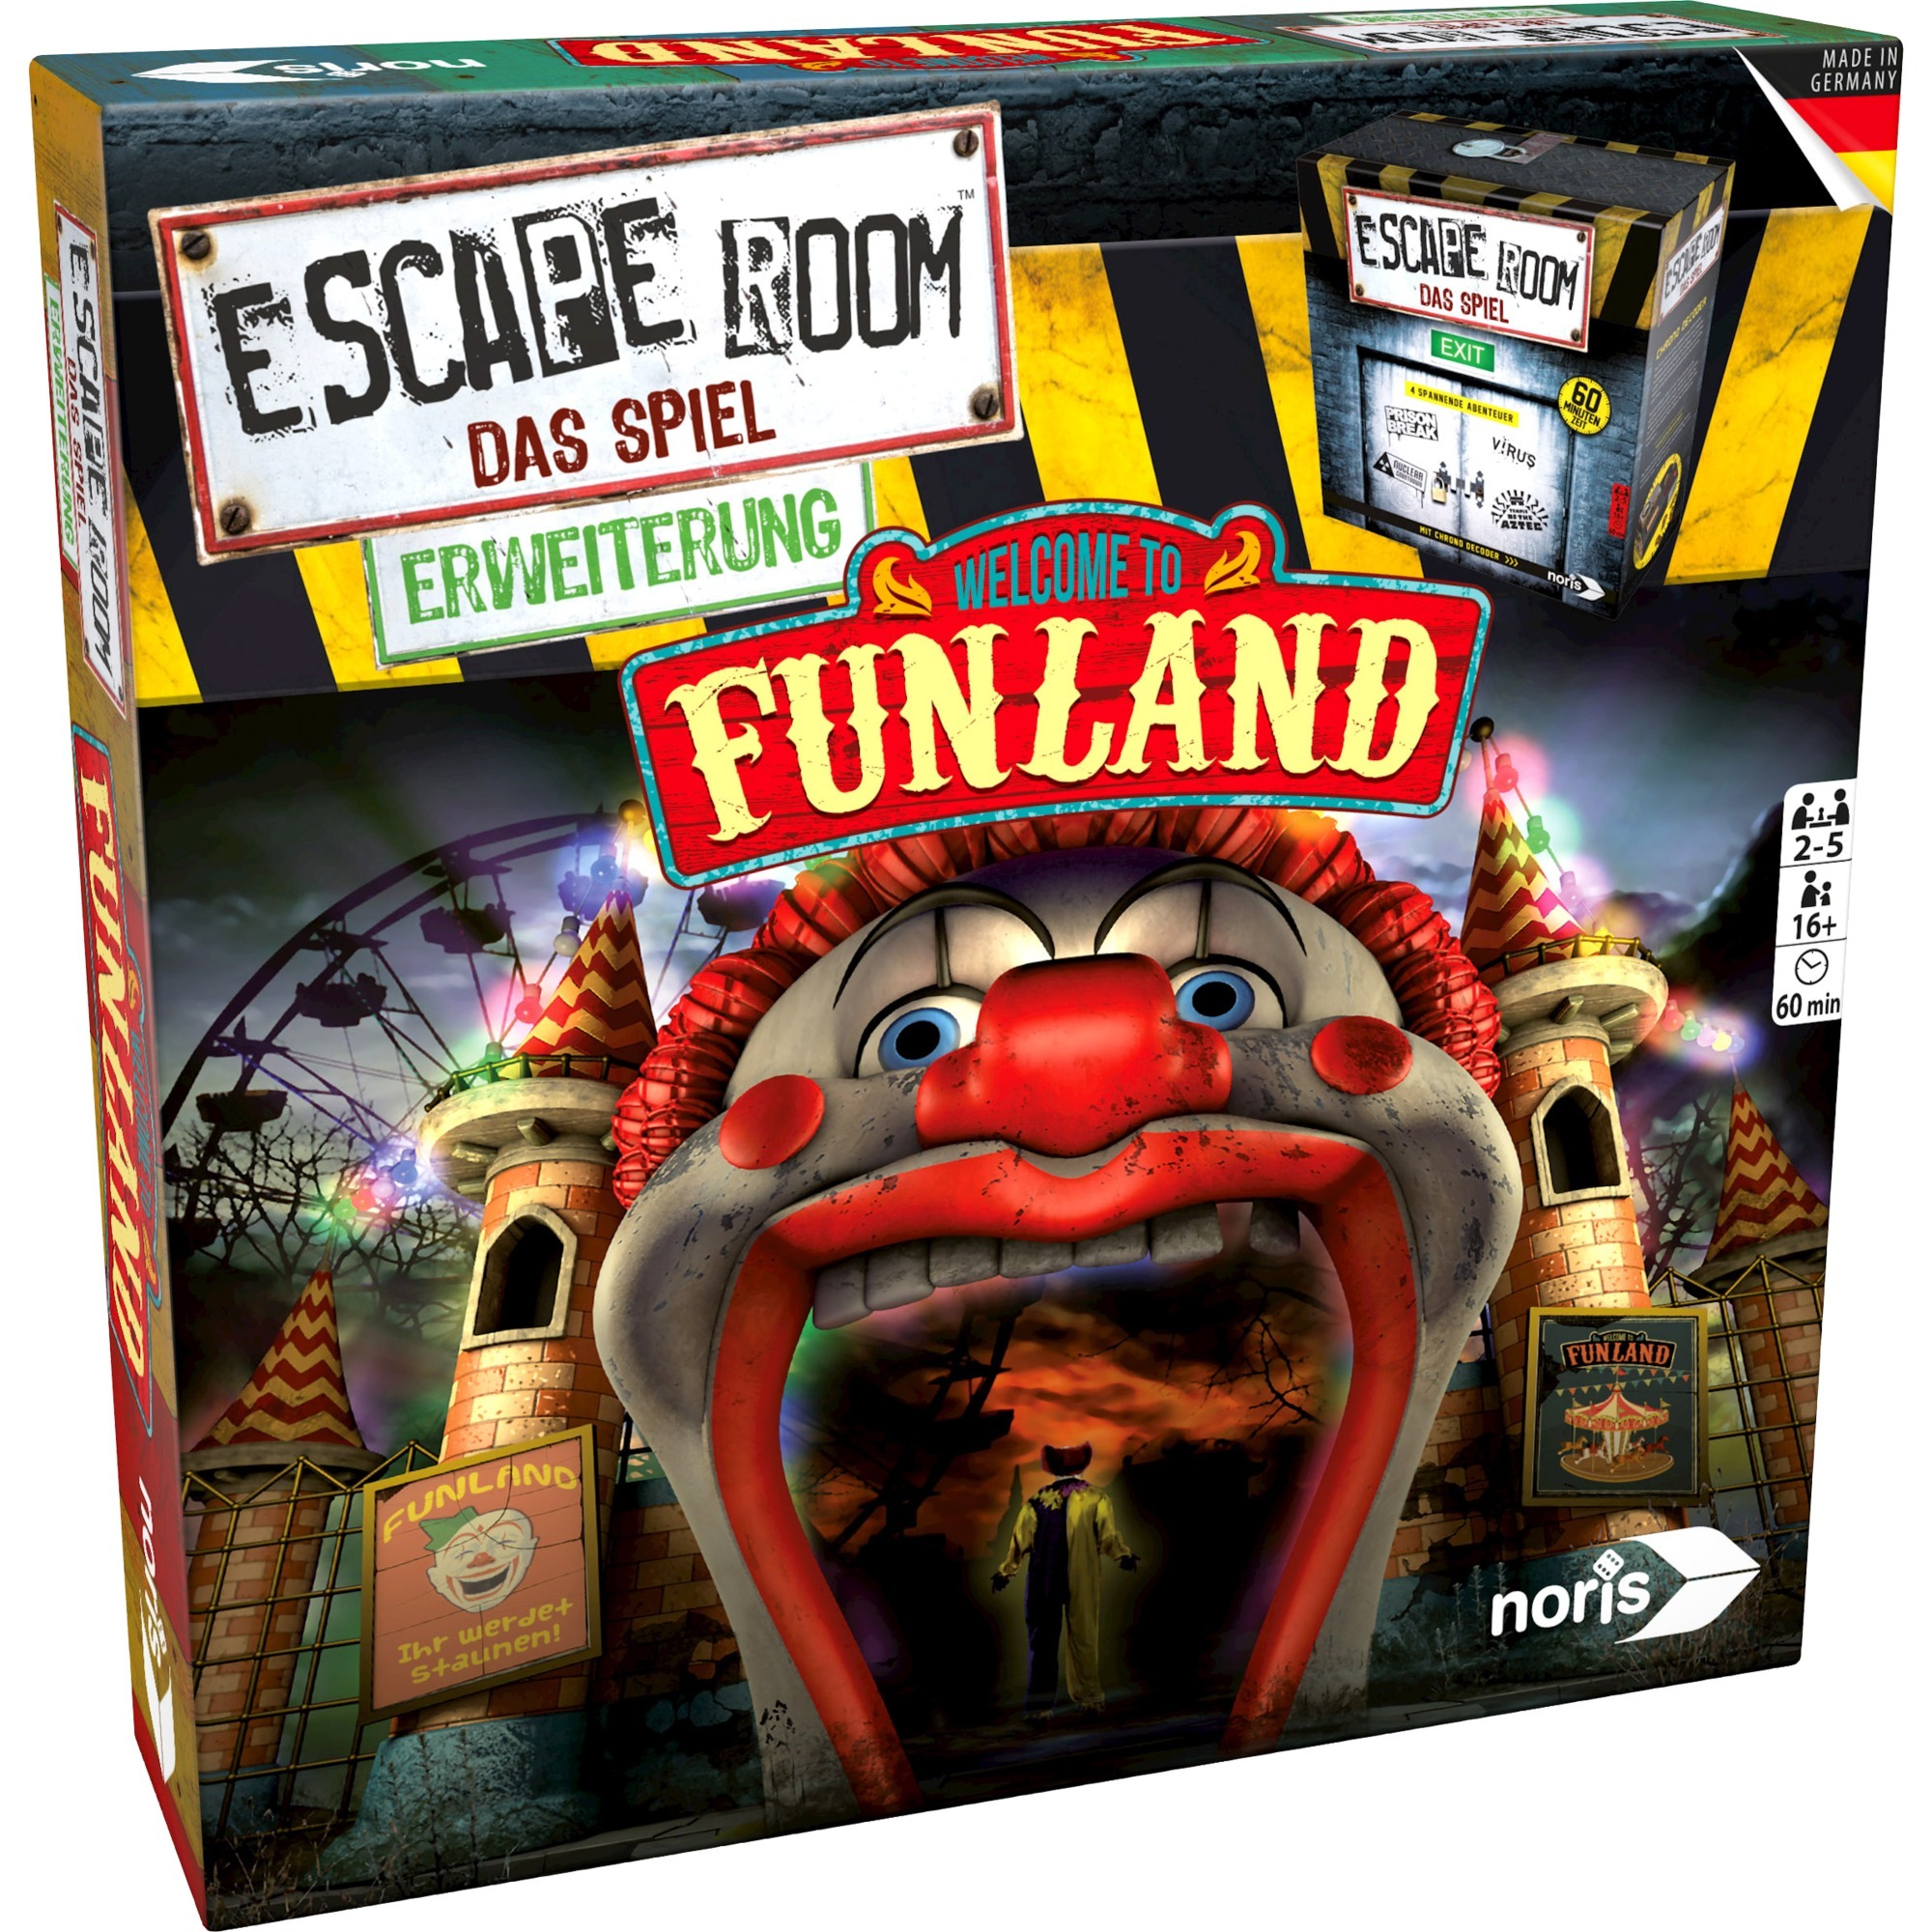 Image of Alternate - Escape Room: Funland, Partyspiel online einkaufen bei Alternate